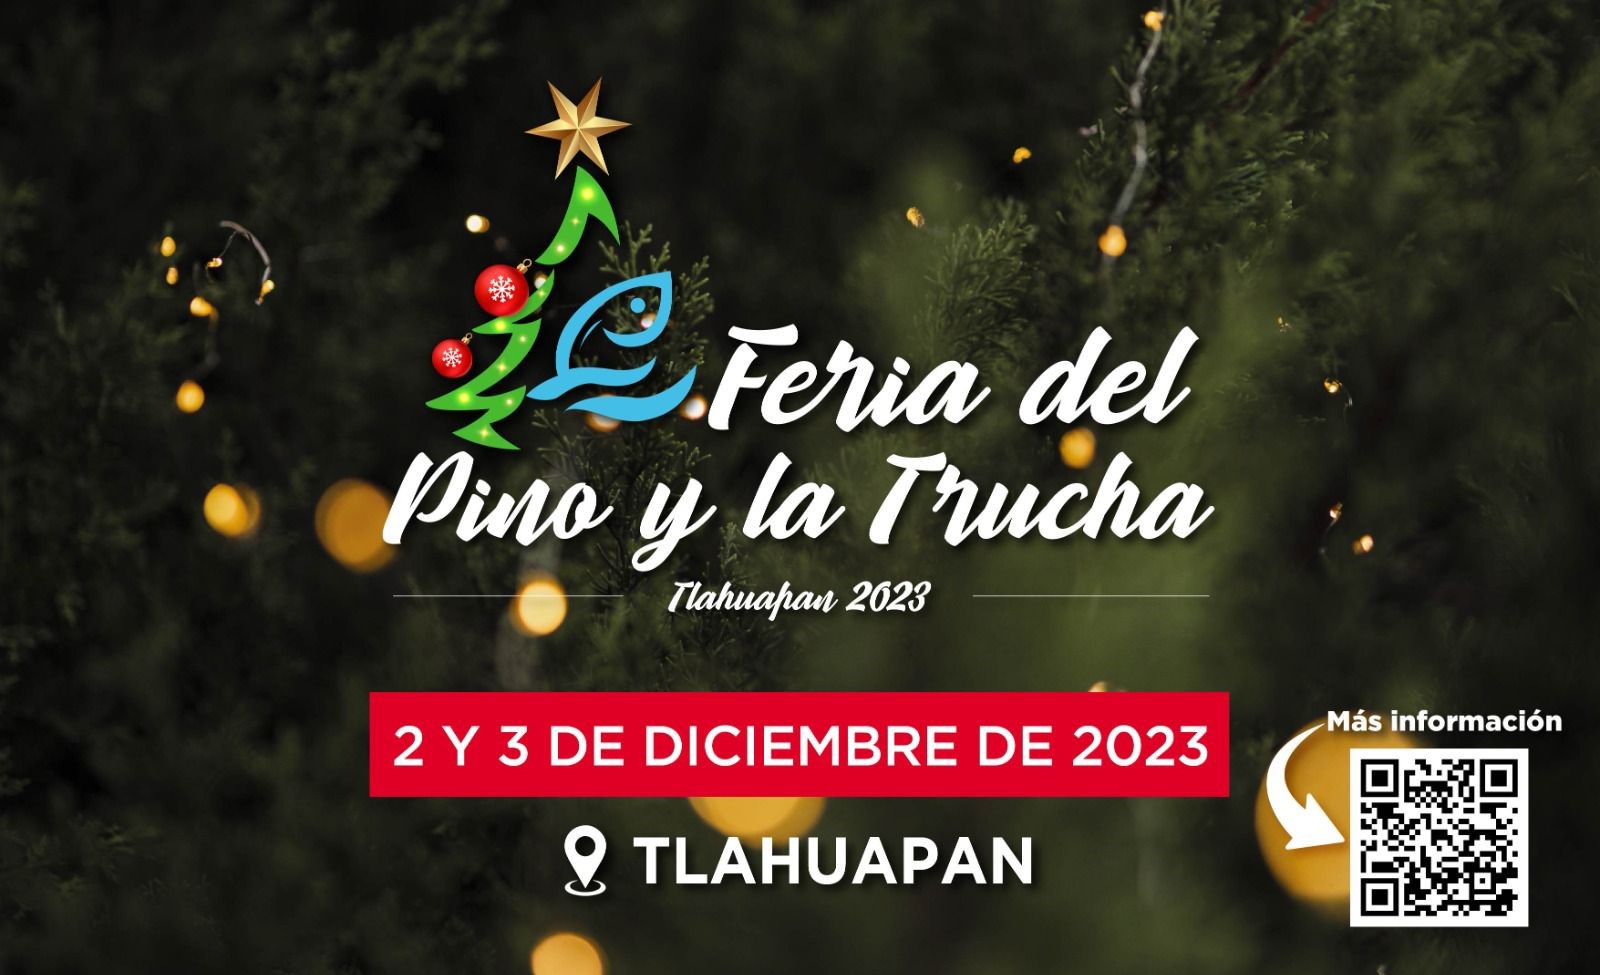 Alístate para la Feria del Pino y la Trucha en Tlahuapan